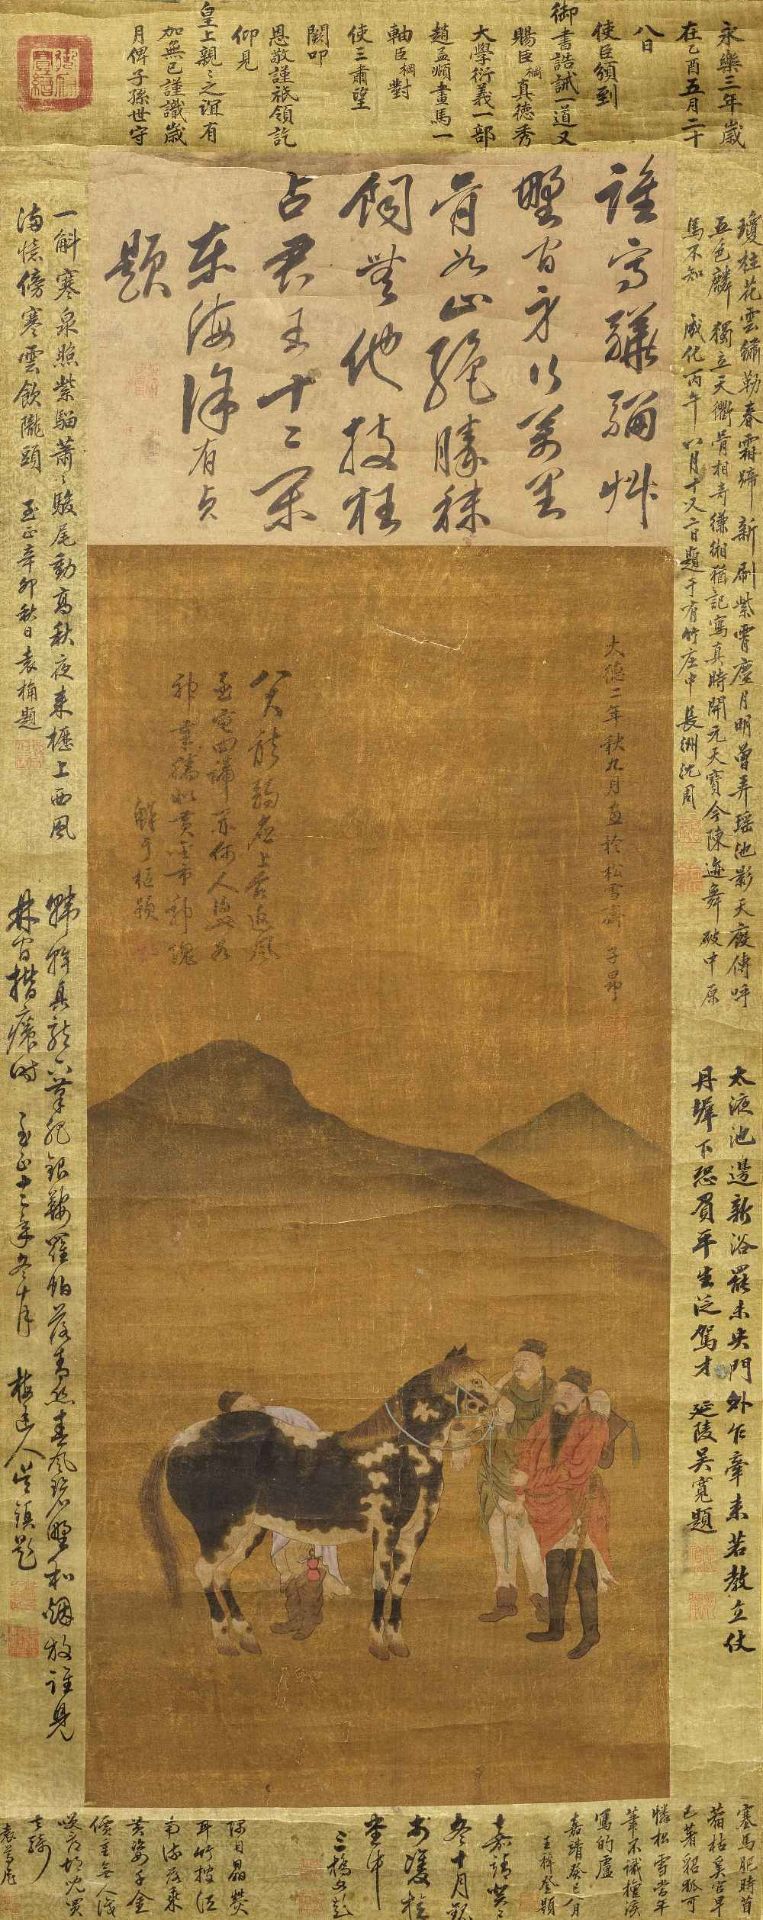 FOLLOWER OF ZHAO MENGFU (1254-1319); FOLLOWER OF XIANYU SHI (1246-1302) Horse and Grooms